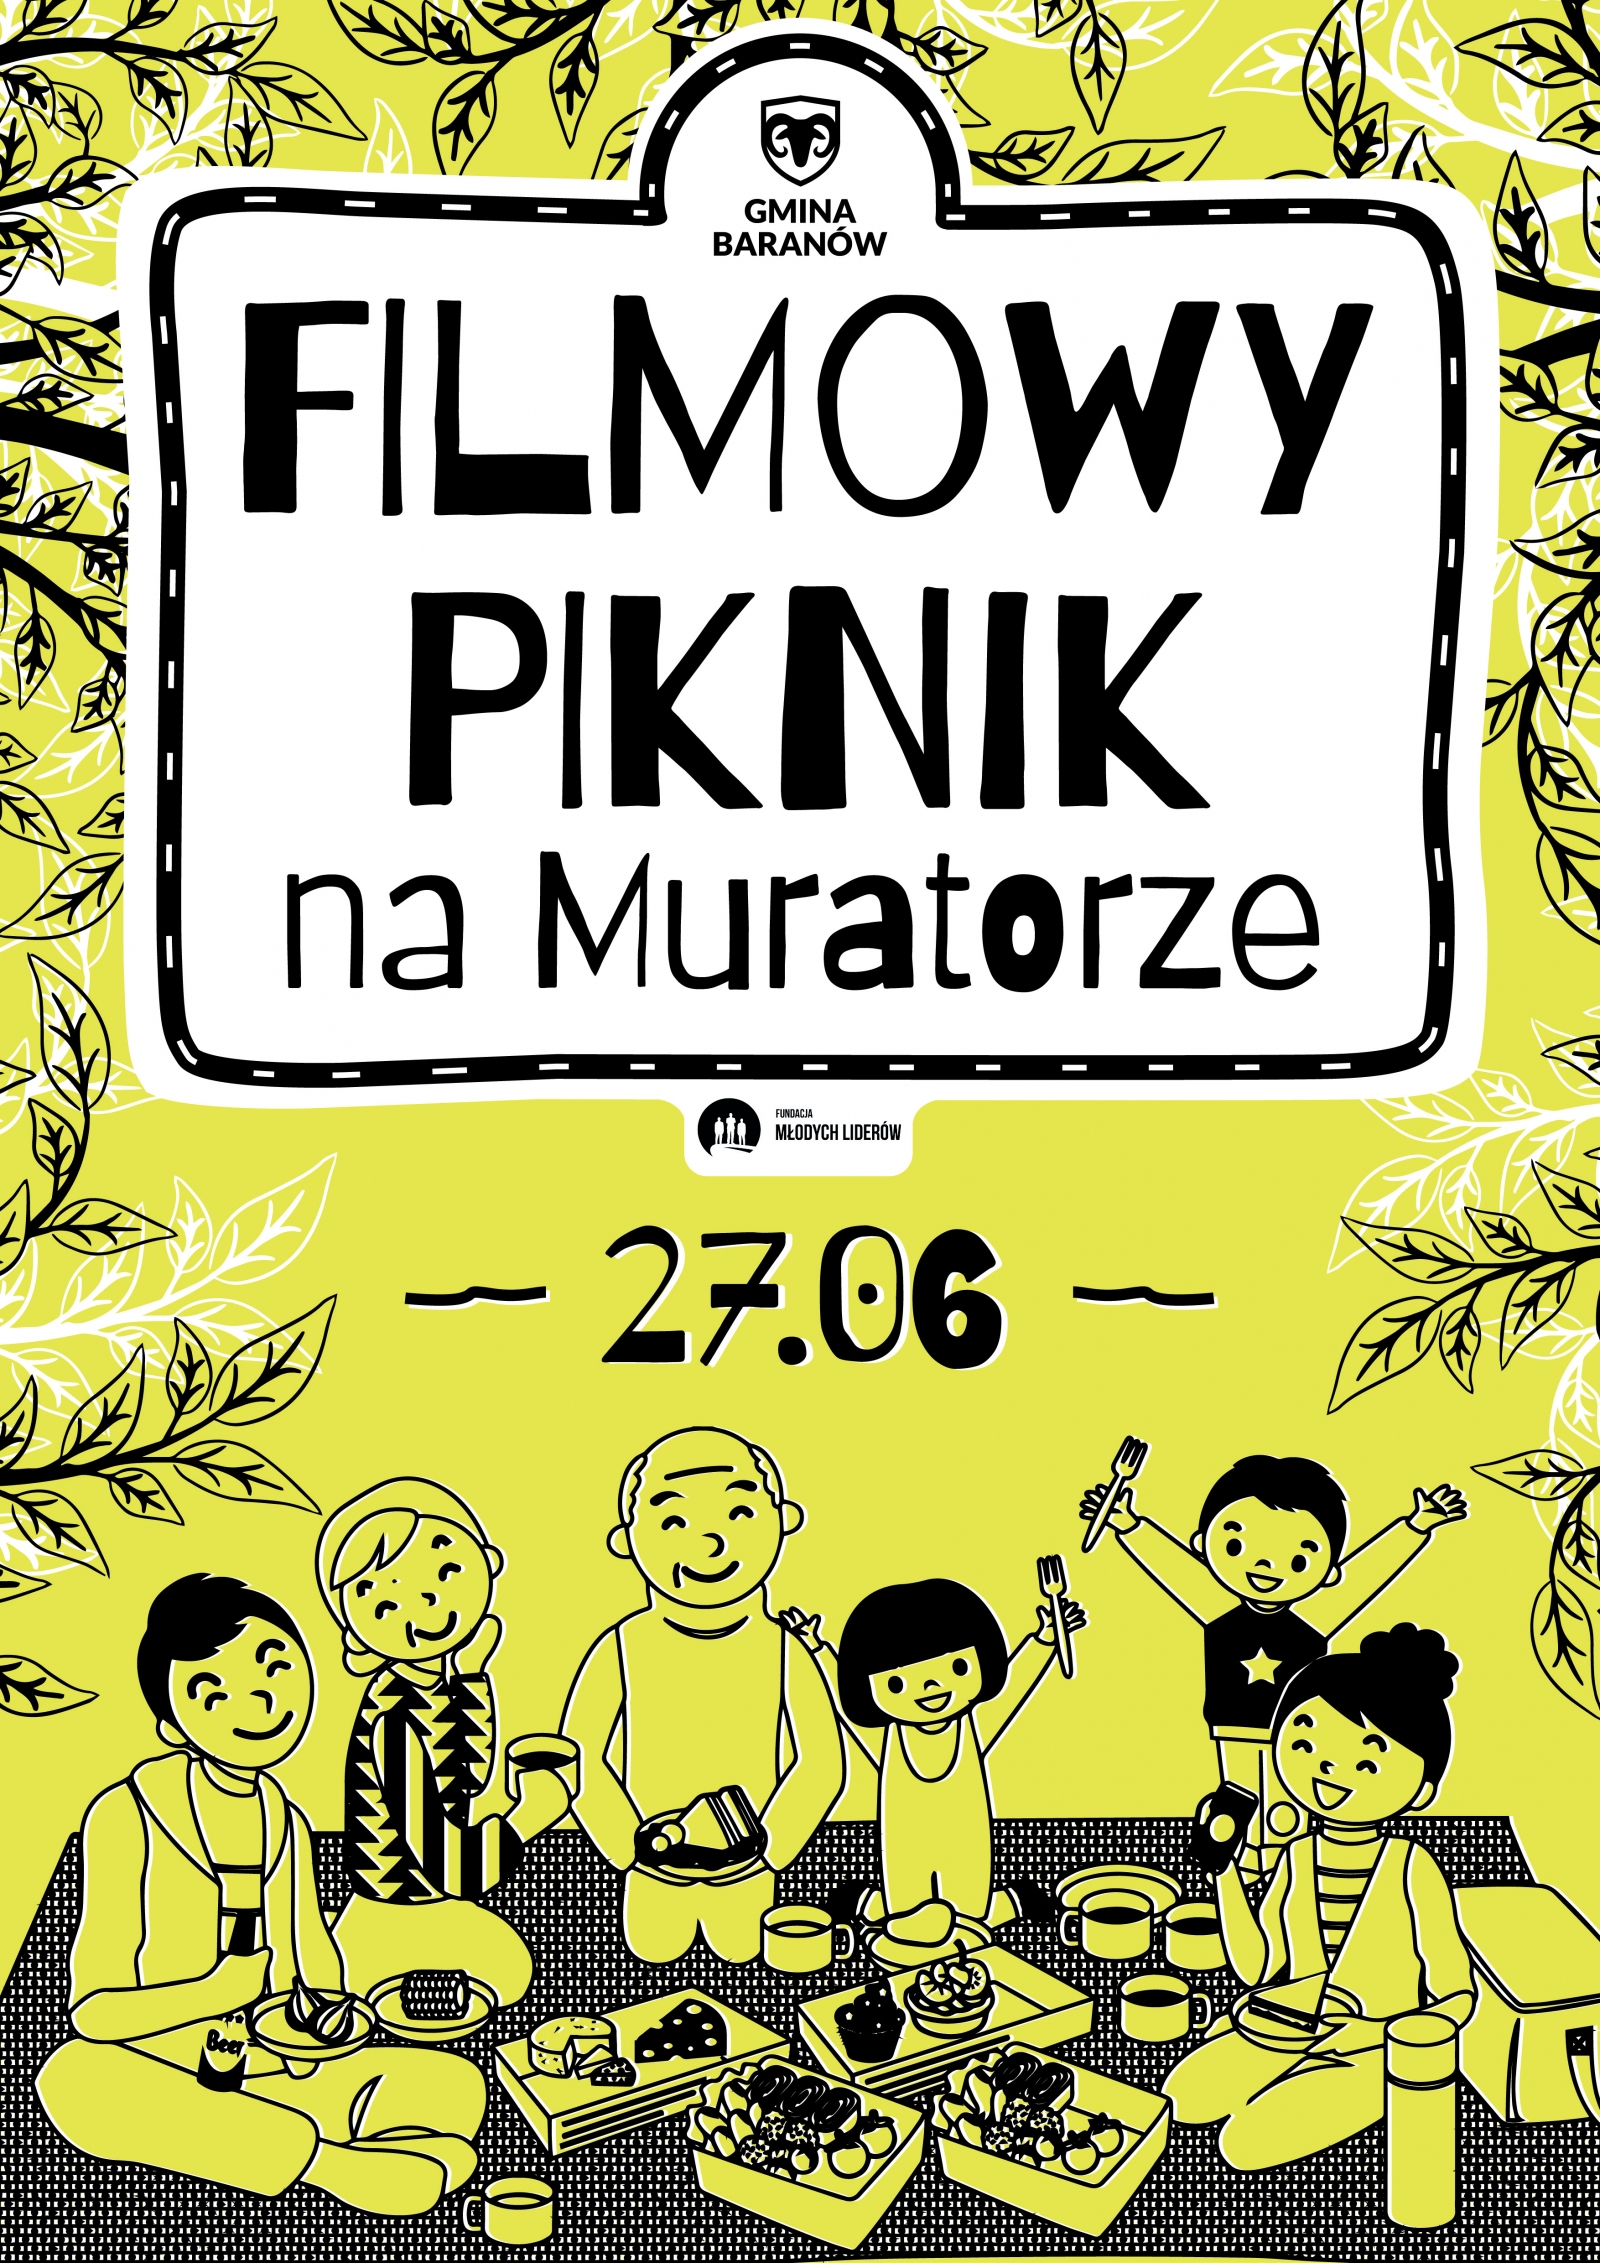 FILMOWY PIKNIK